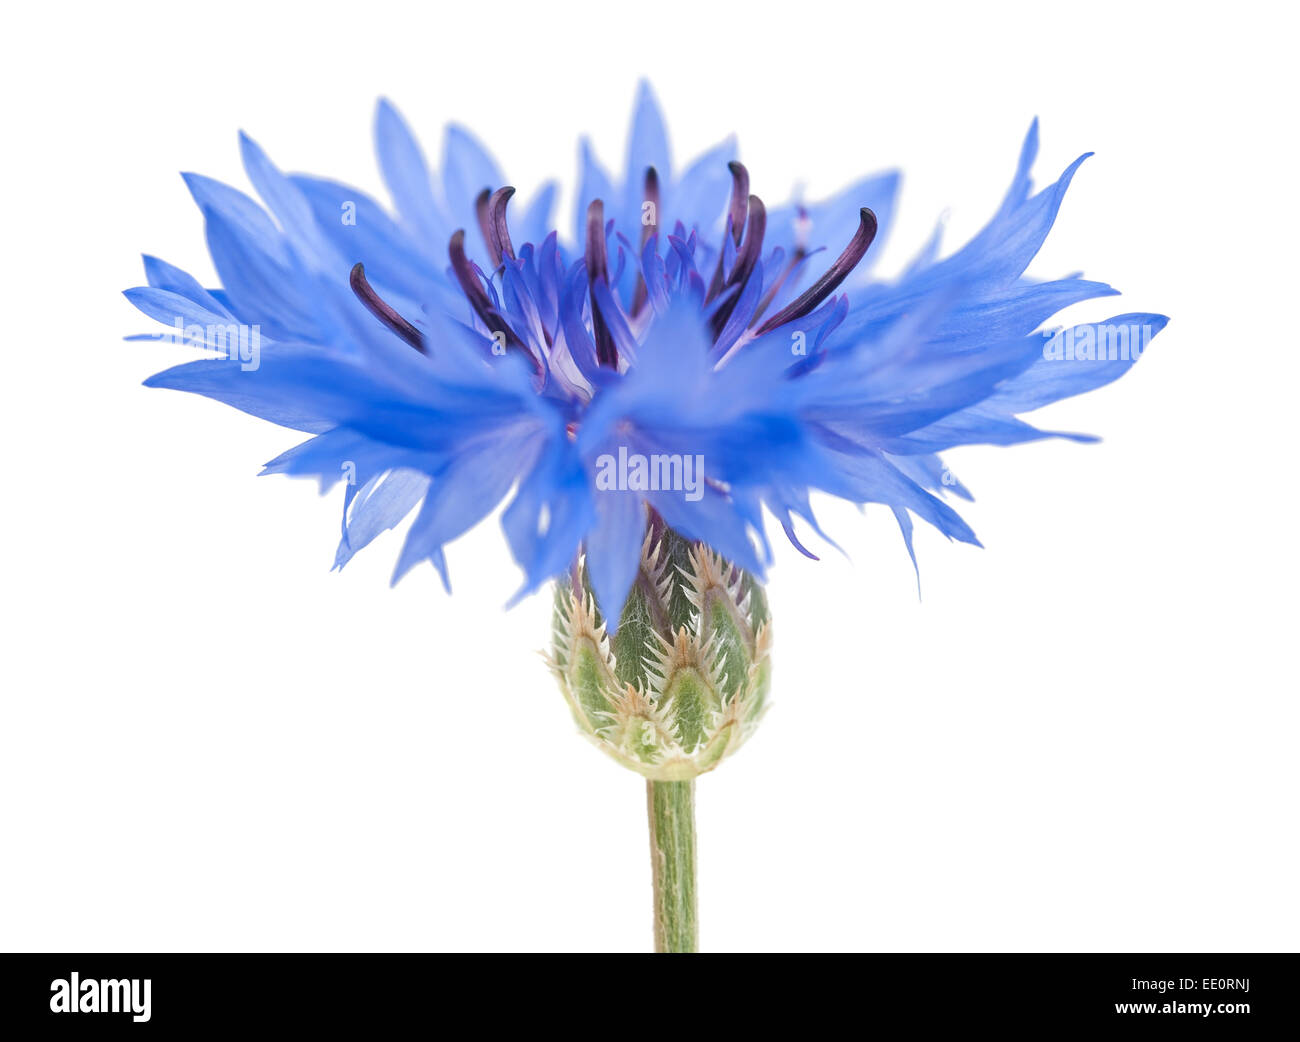 Blue cornflower isolated on white background Stock Photo